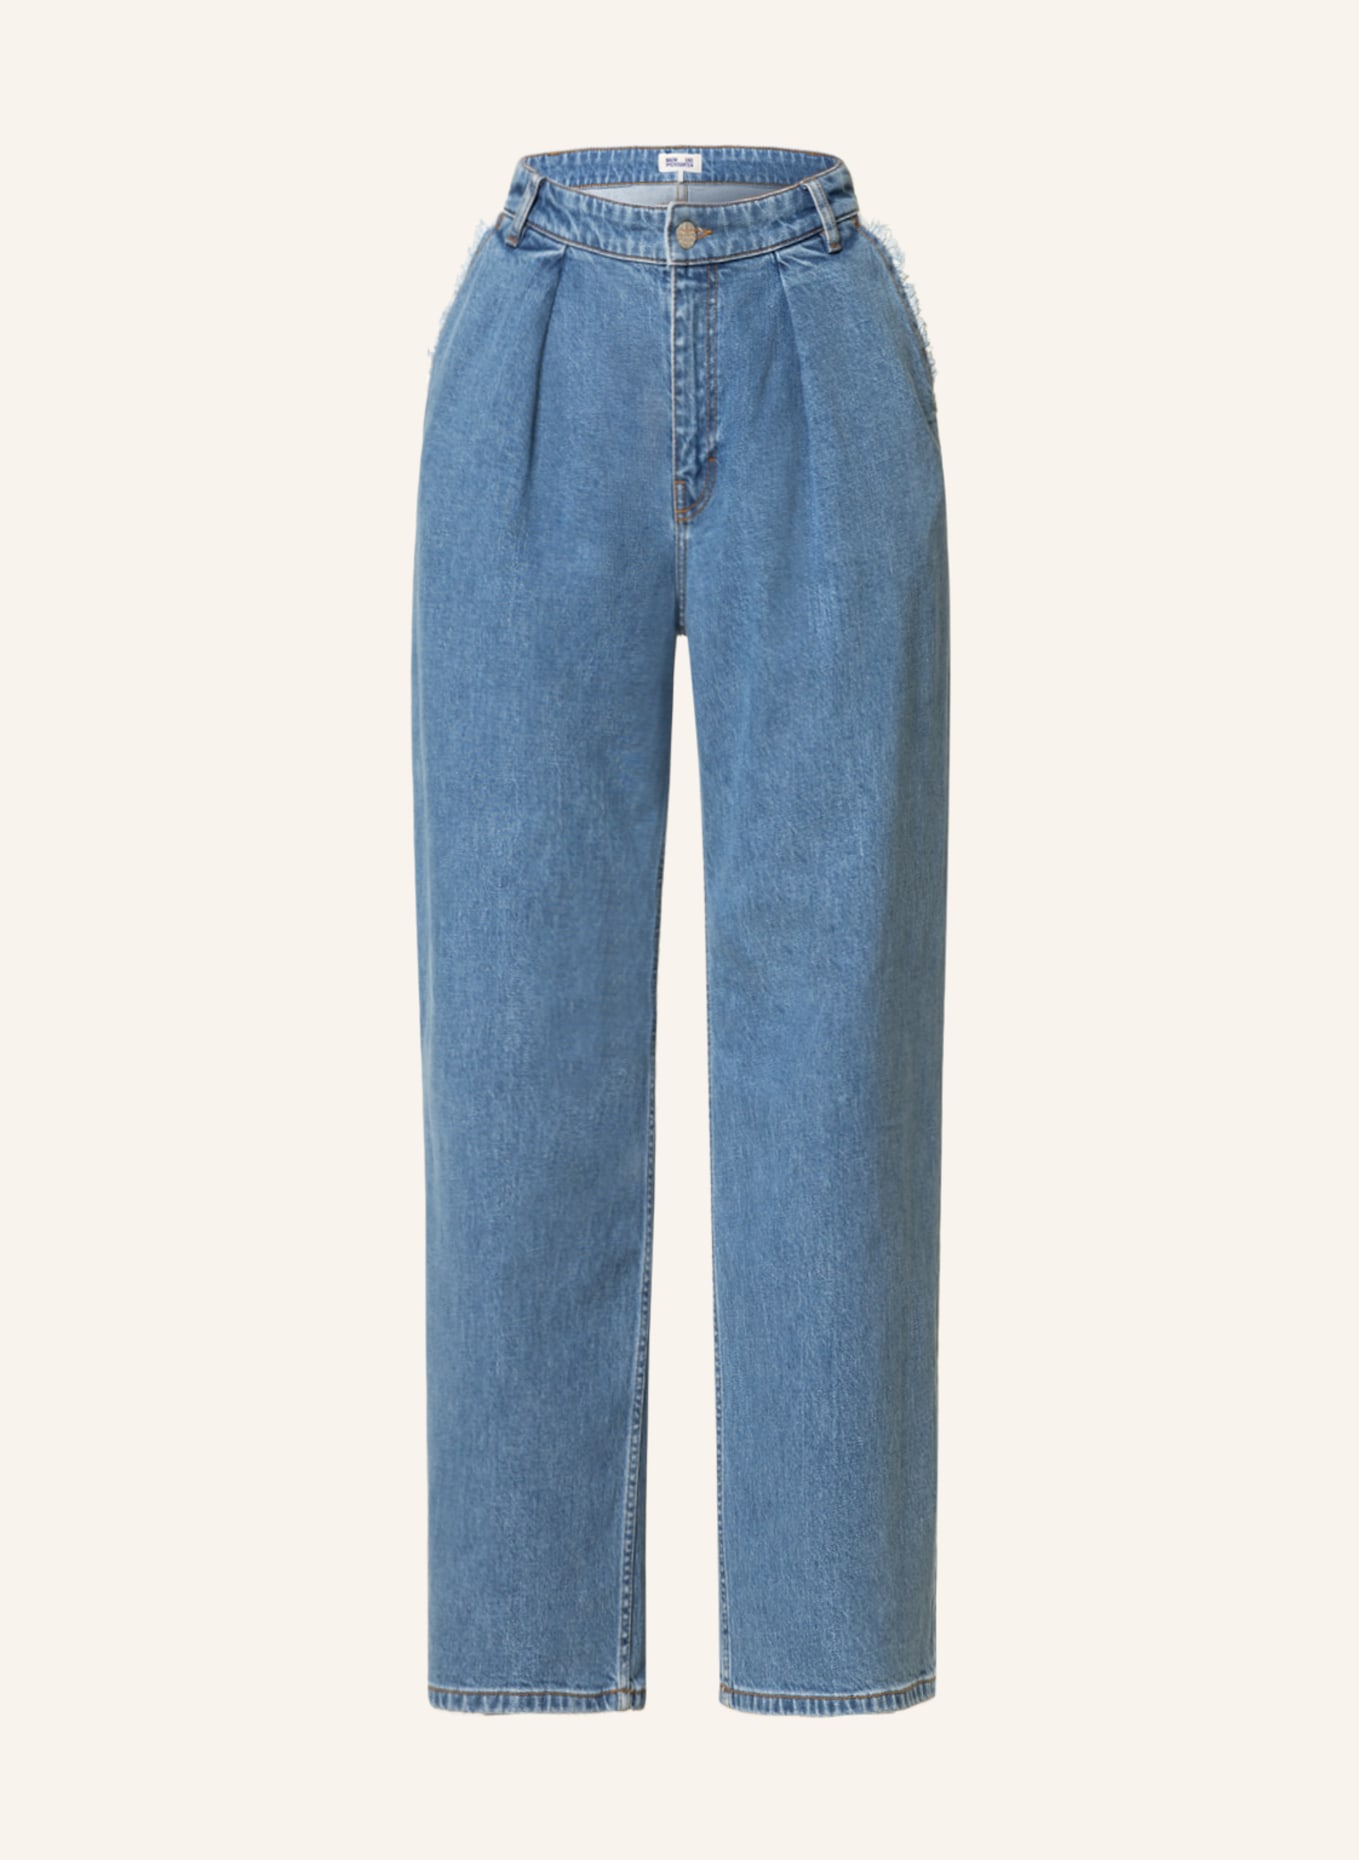 BAUM UND PFERDGARTEN Flared Jeans NAKITA, Farbe: C7809 Surf Blue (Bild 1)